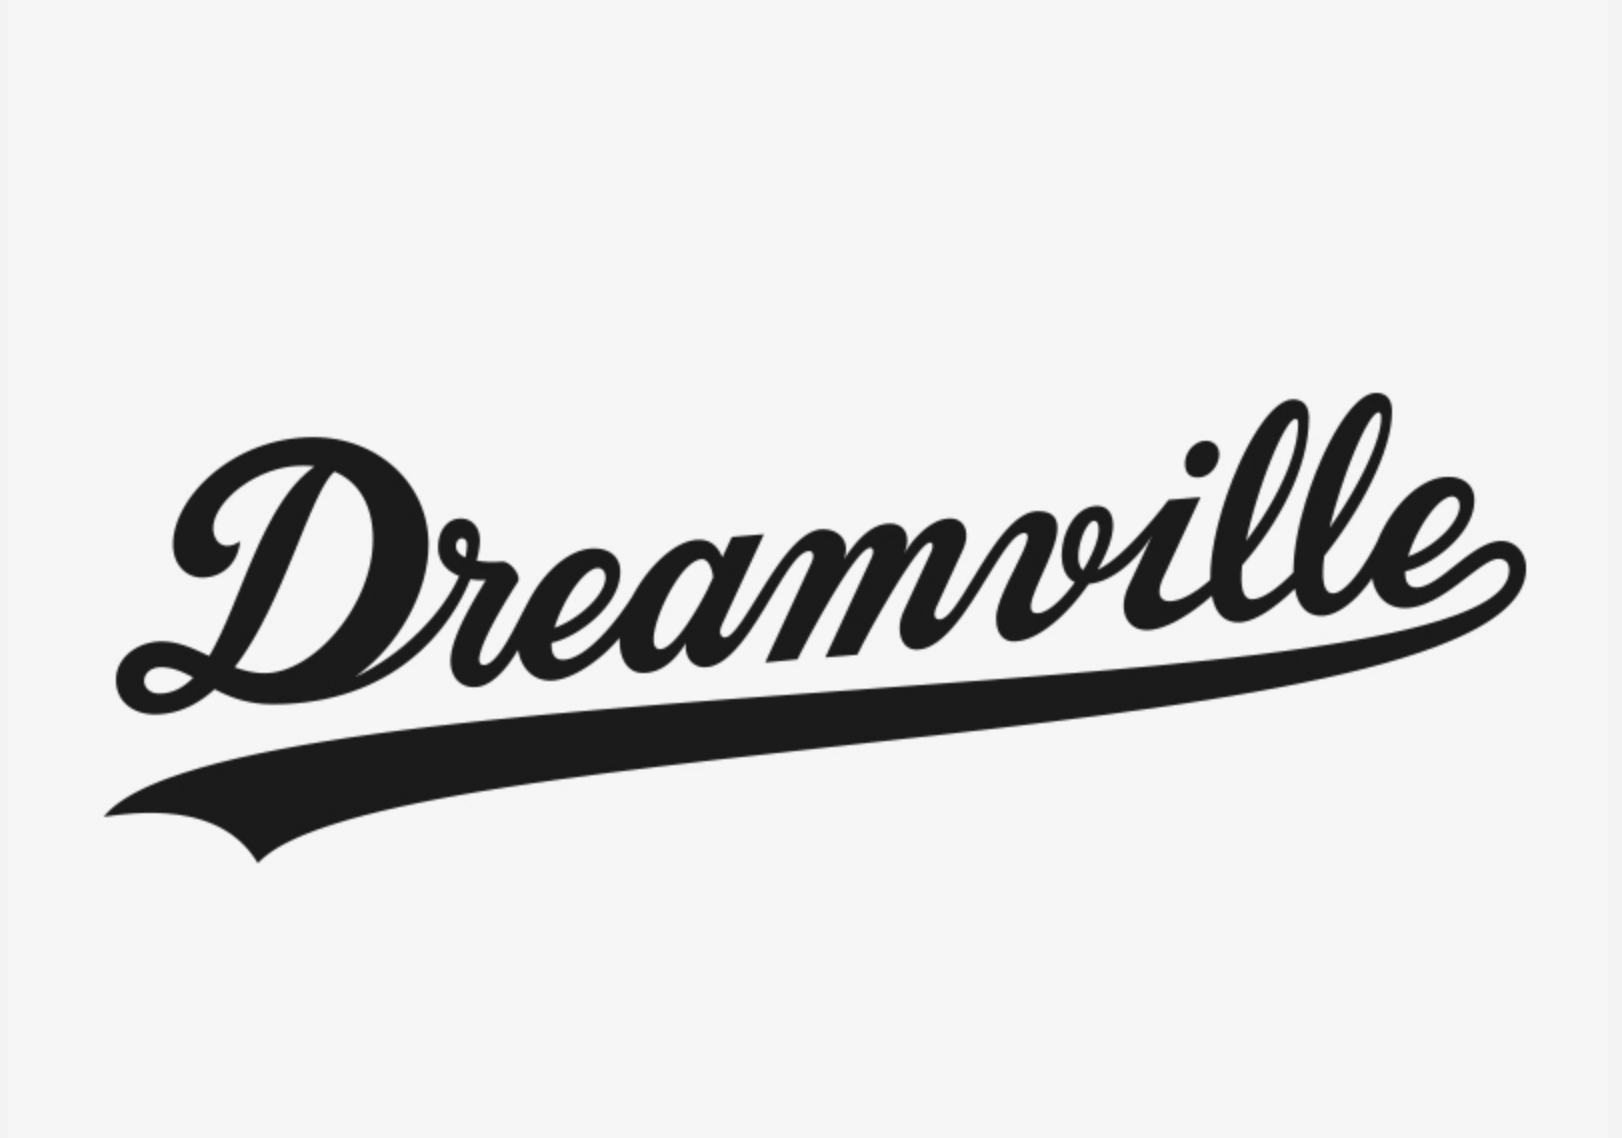 Dreamville-logo.png